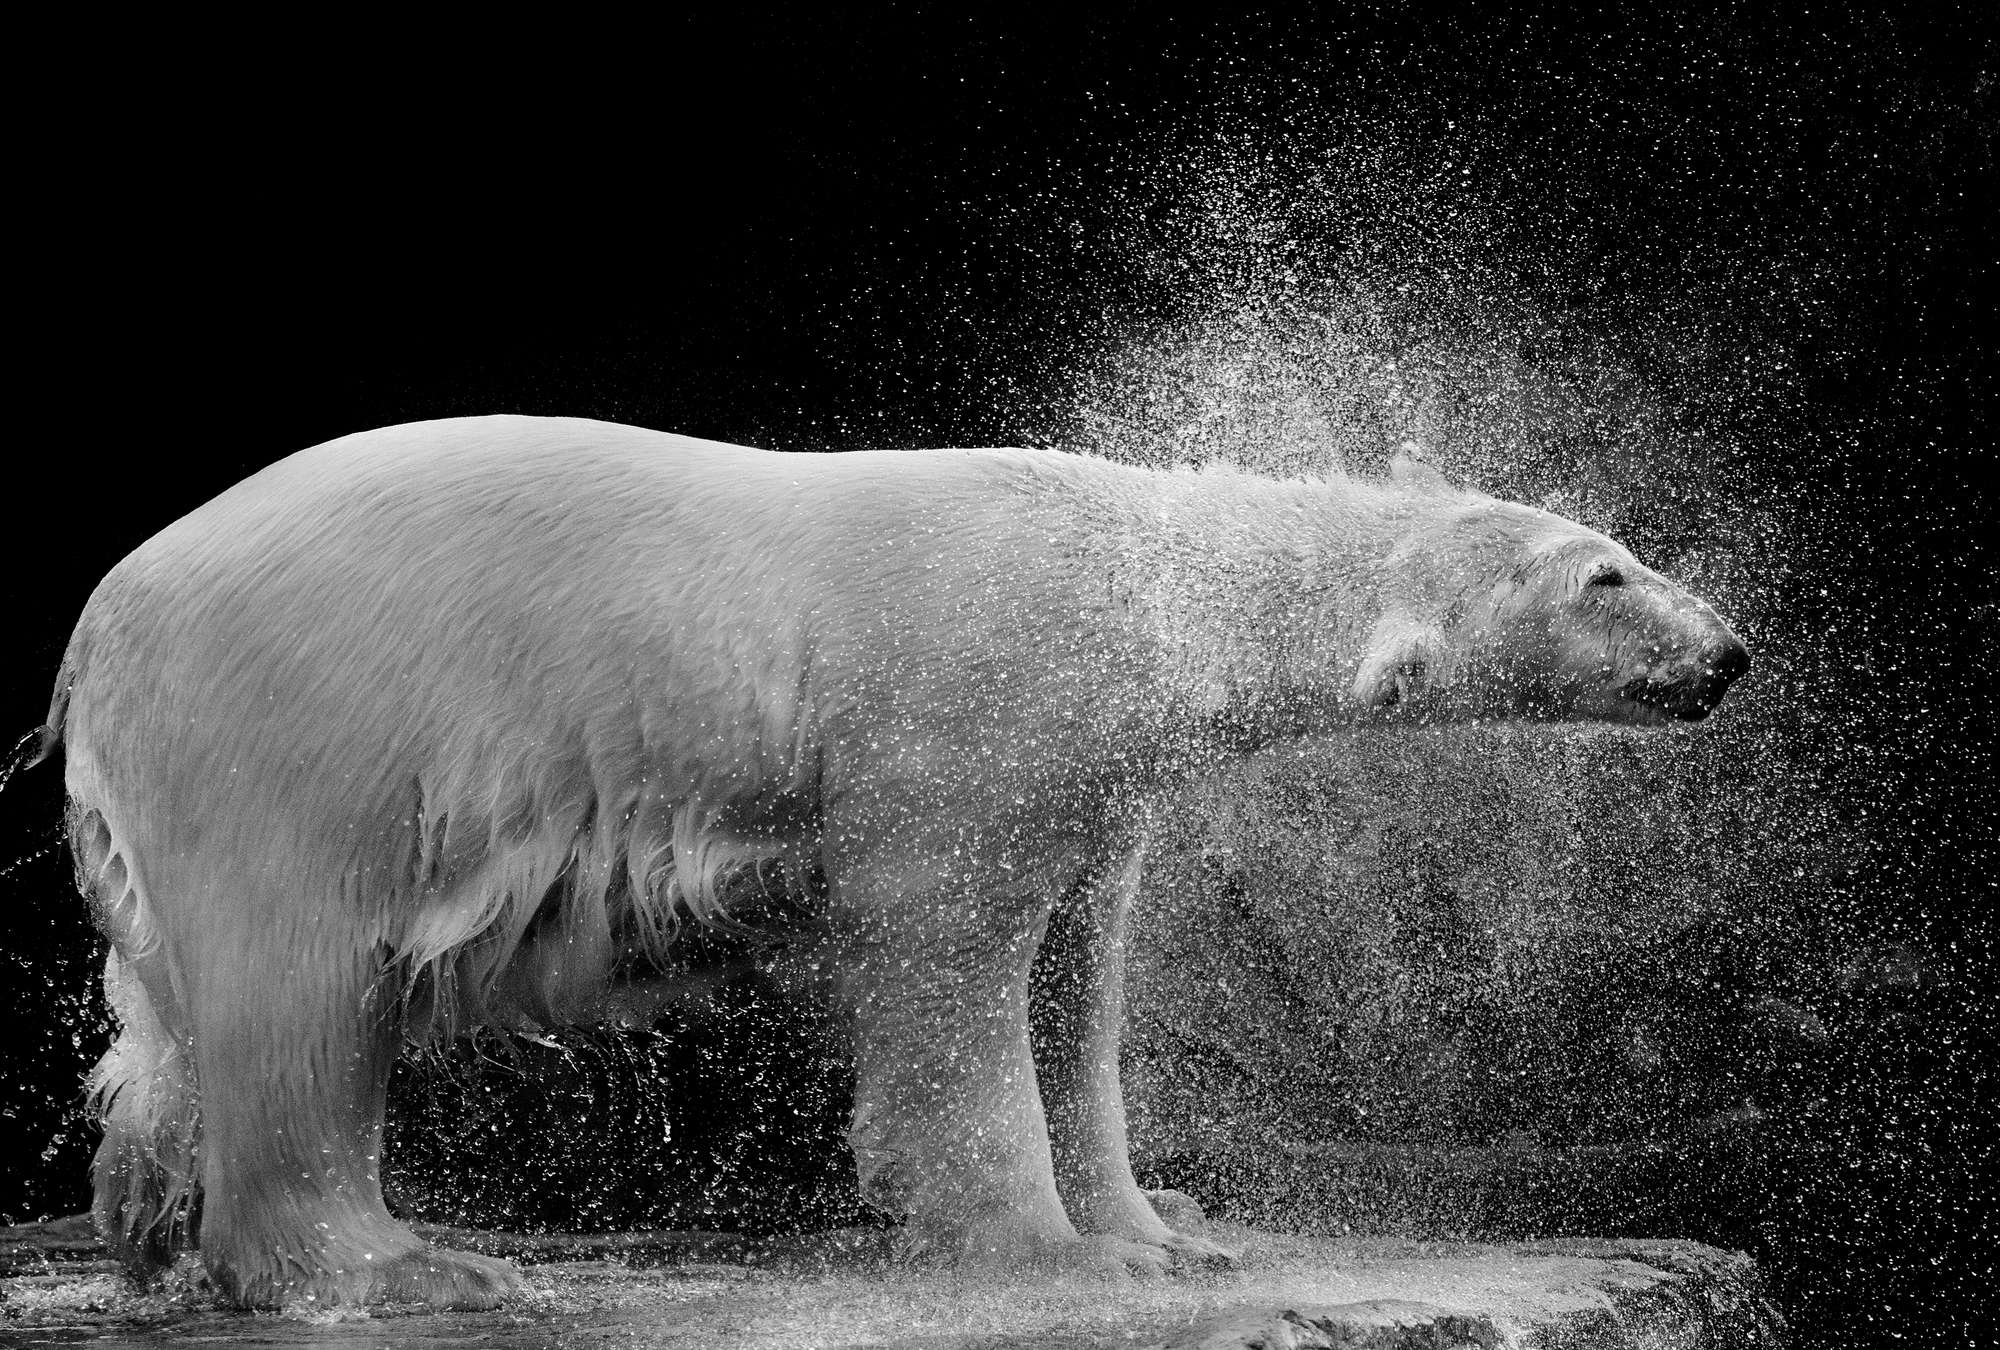             Papier peint ours polaire mouillé sur fond noir
        